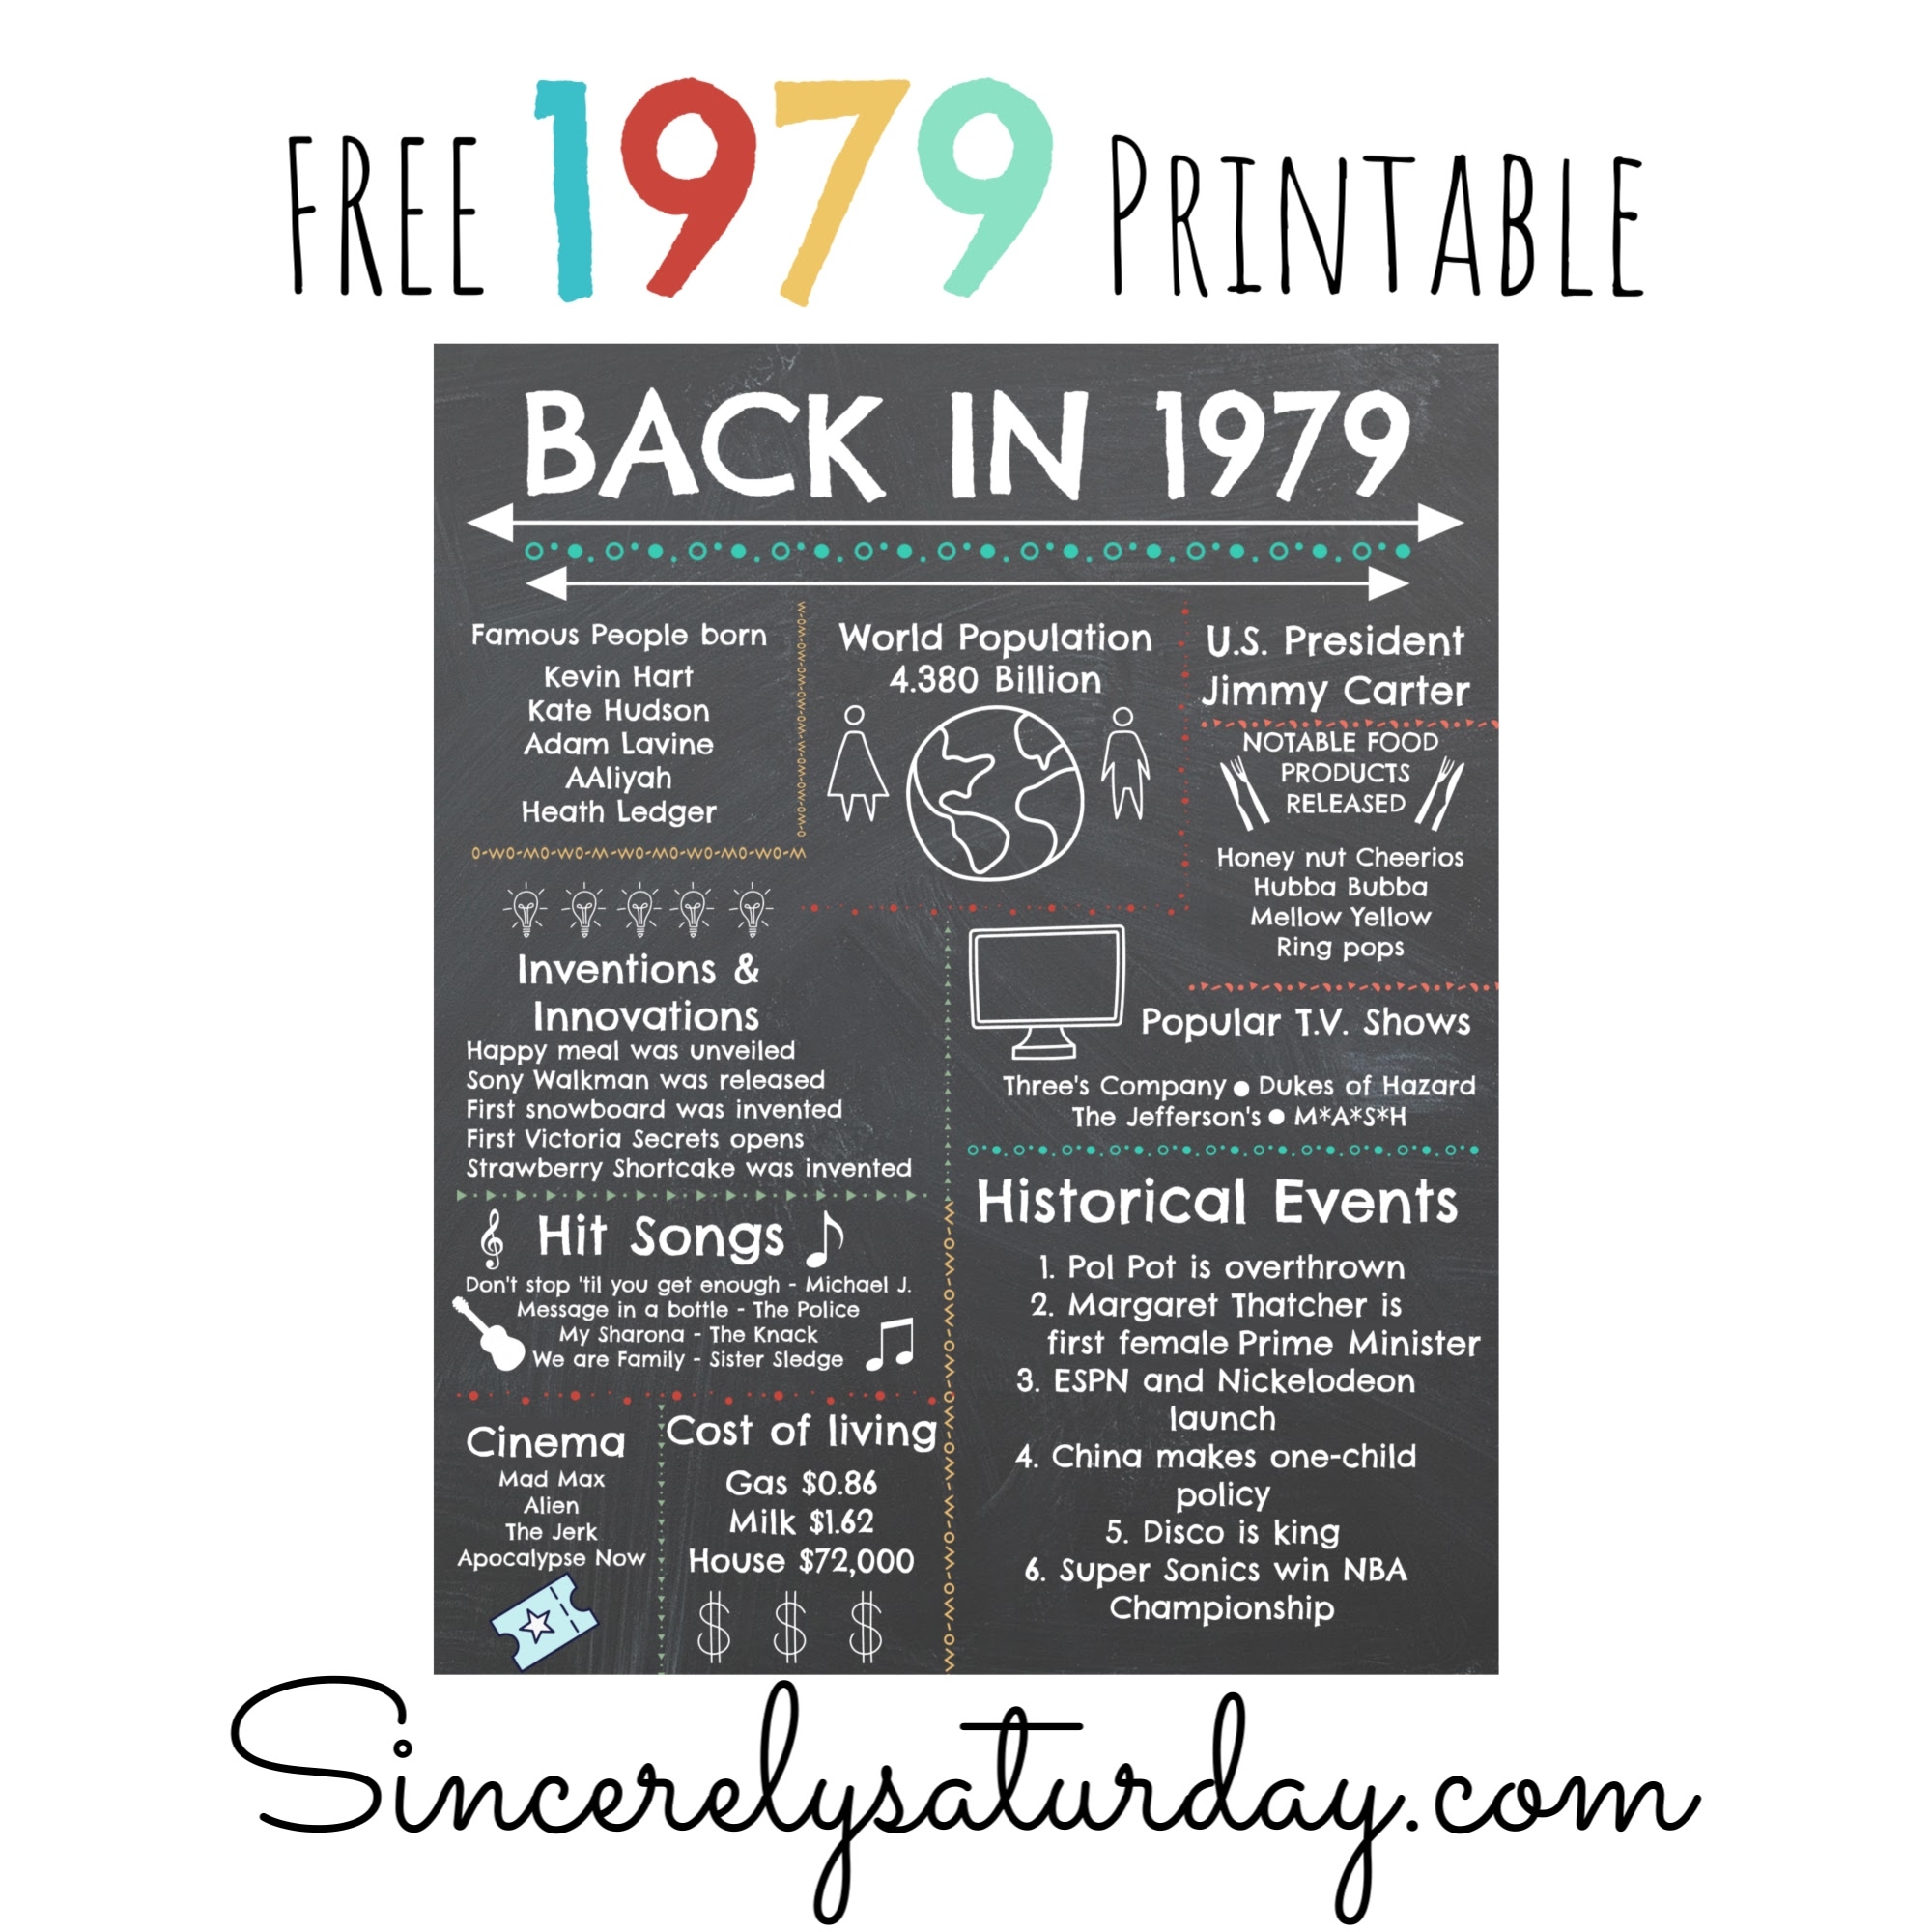 1979 Free printable - 40 years